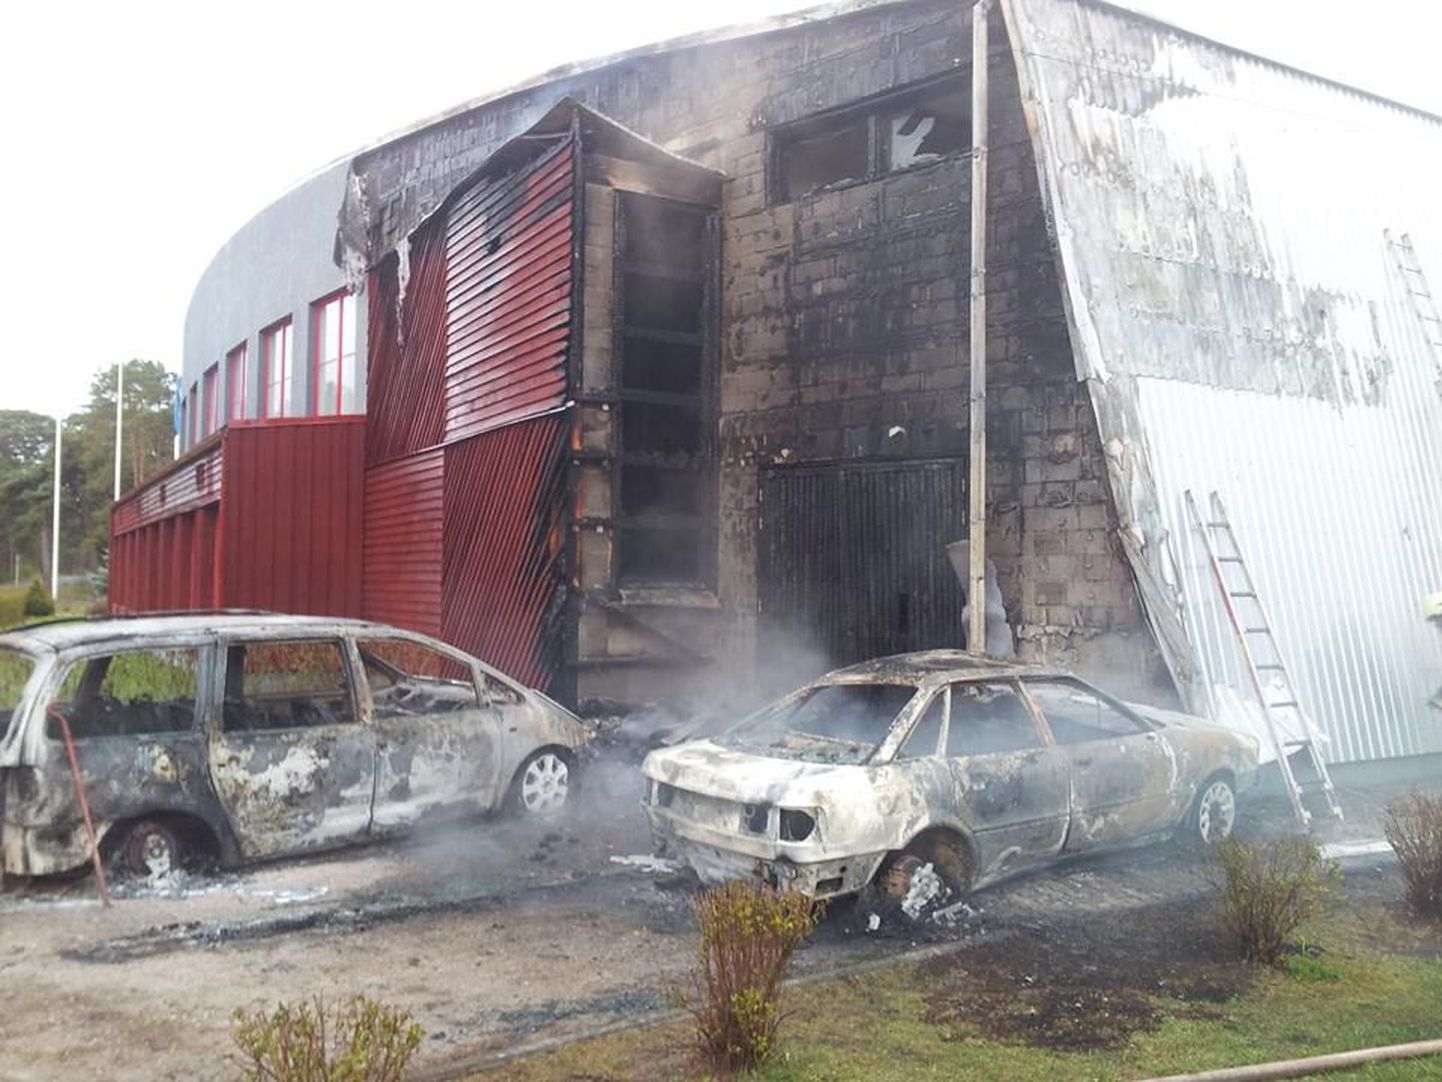 Kihnu põles täna hommikul kohalik rahvamaja. Põleng sai alguse maja kõrval süttinud autost.